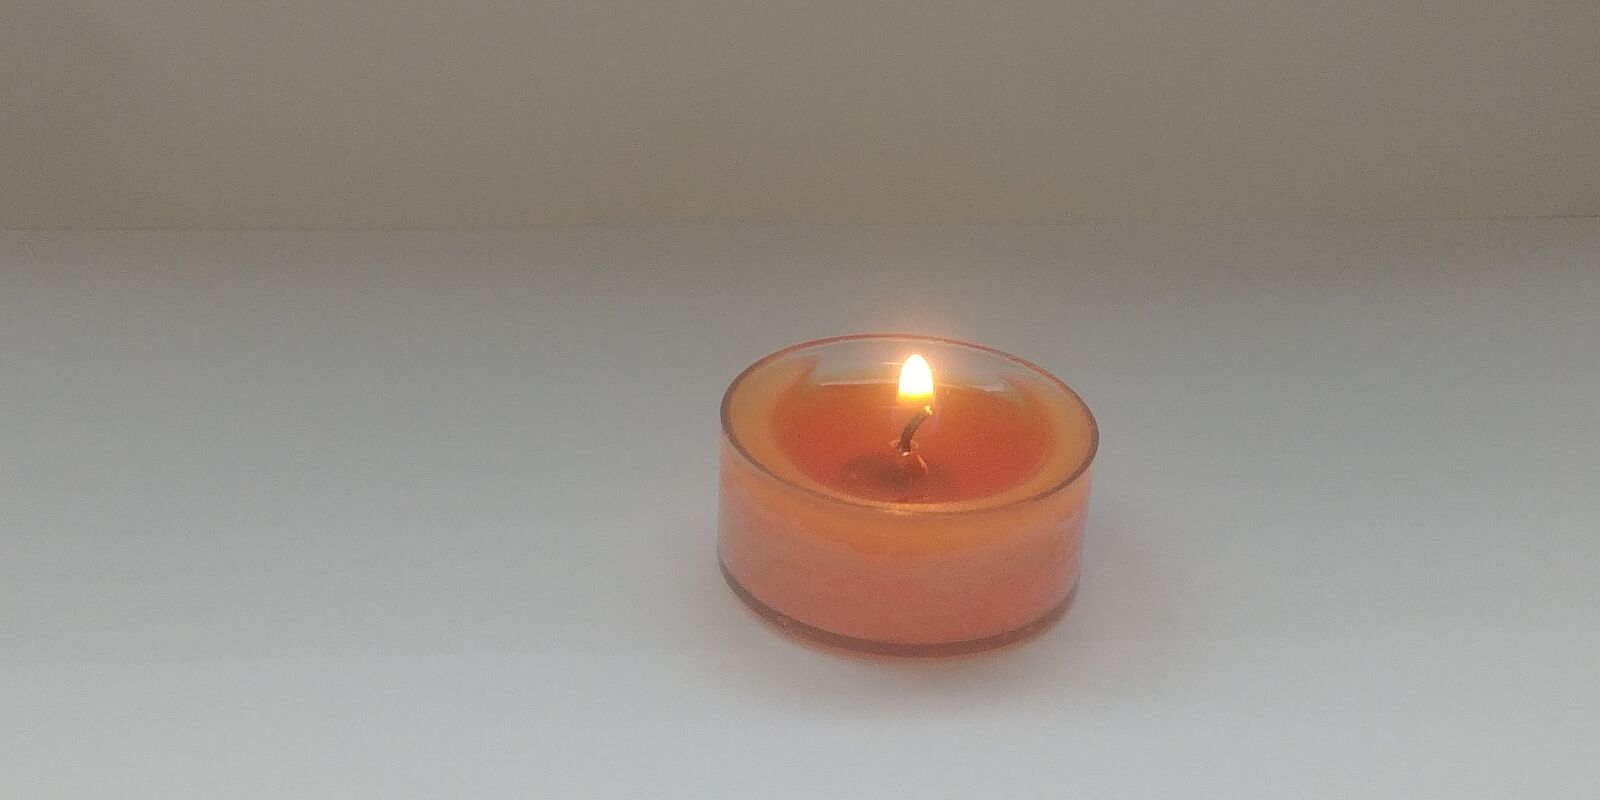 LG G6 sample photo. Candle, melt, orange photography